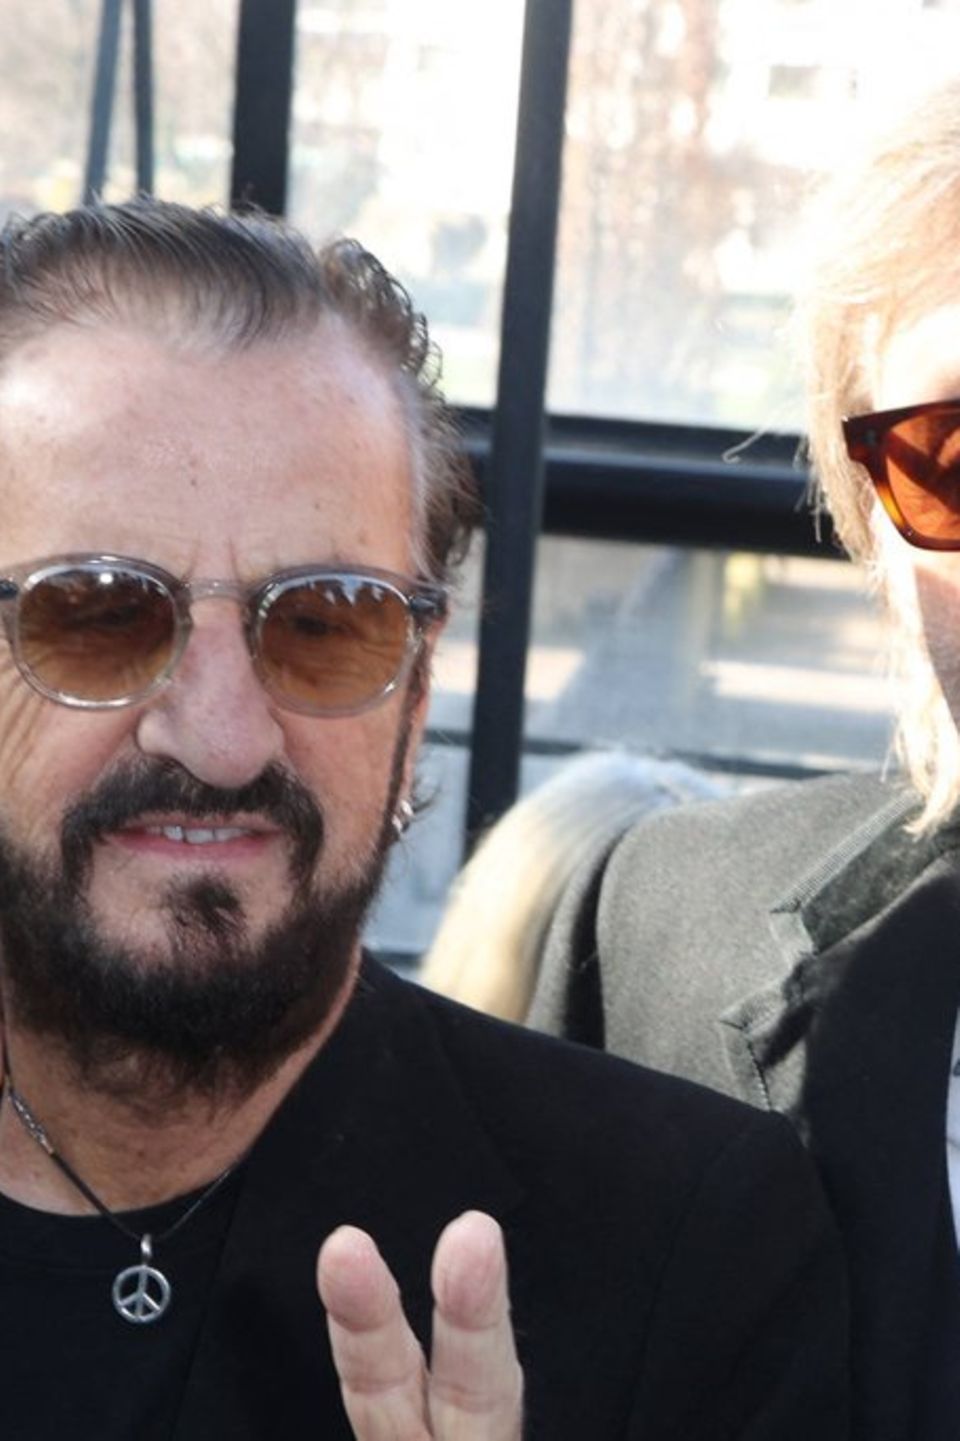 Ringo Starr (l.) und Paul McCartney bei der Paris Fashion Week.